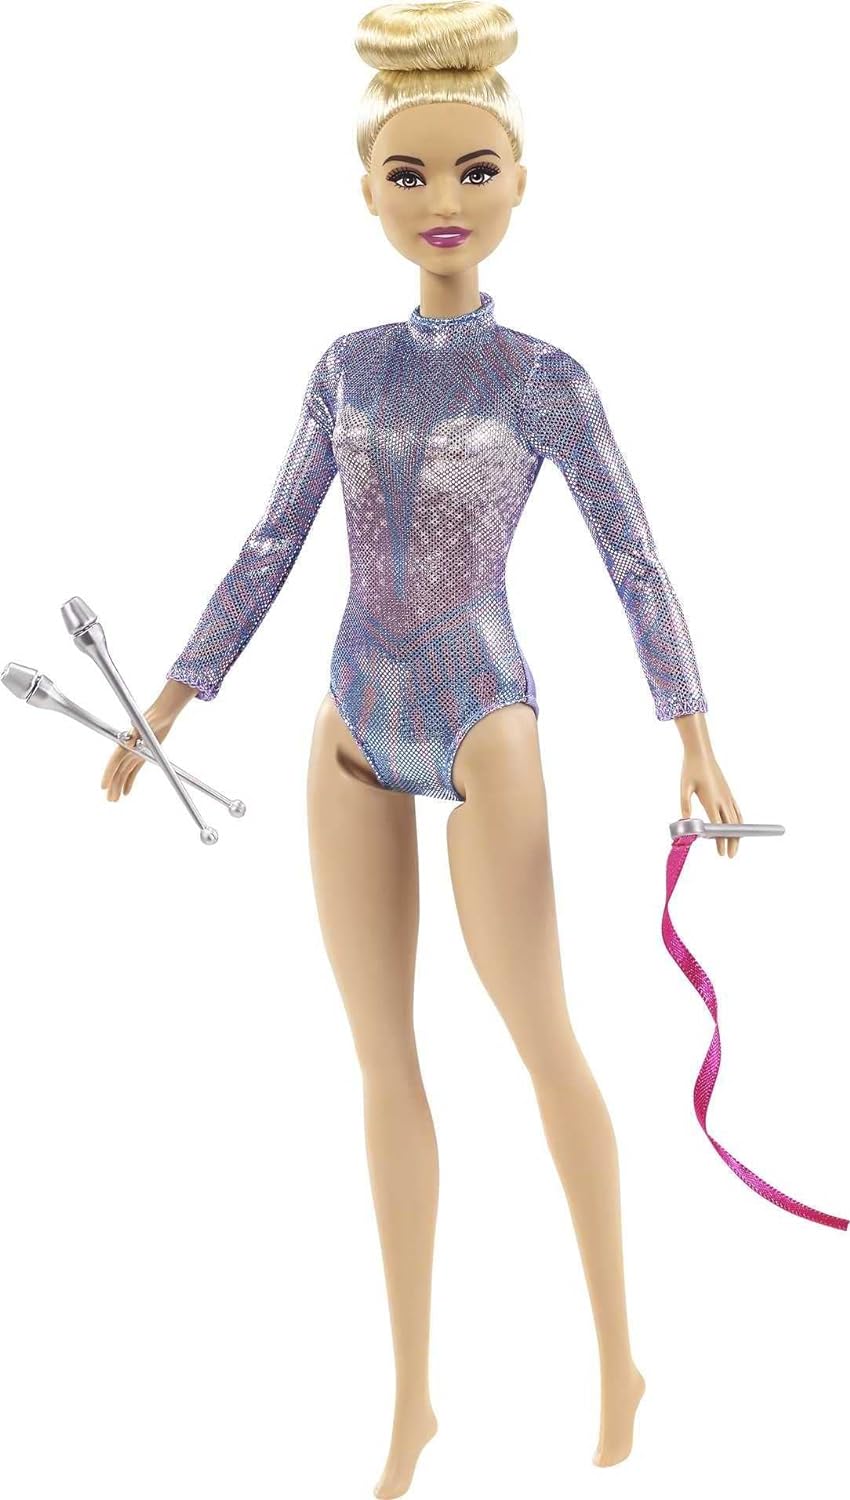 Barbie Rhythmic Gymnast Doll - Blonde